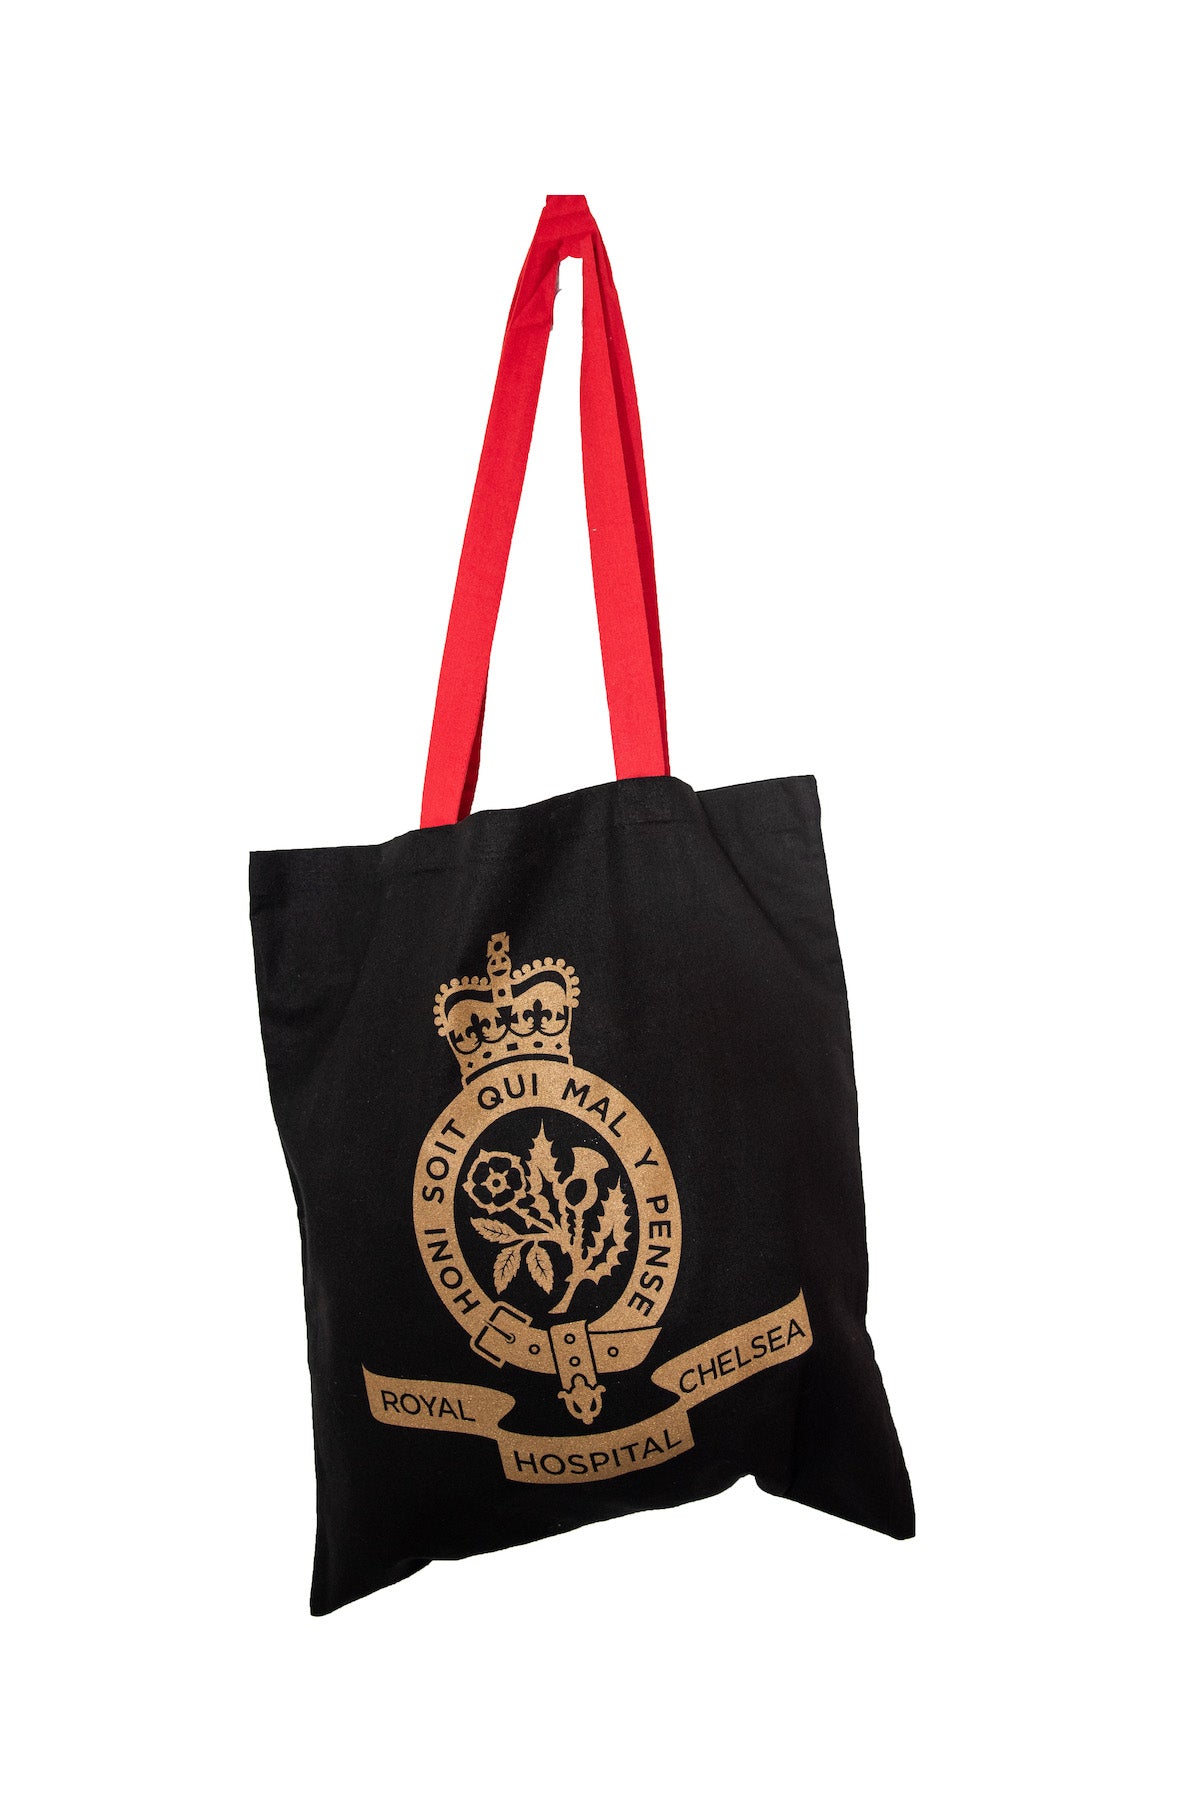 Royal Hospital Branded Cotton Shopper Bags – Royal Hospital Chelsea Shop